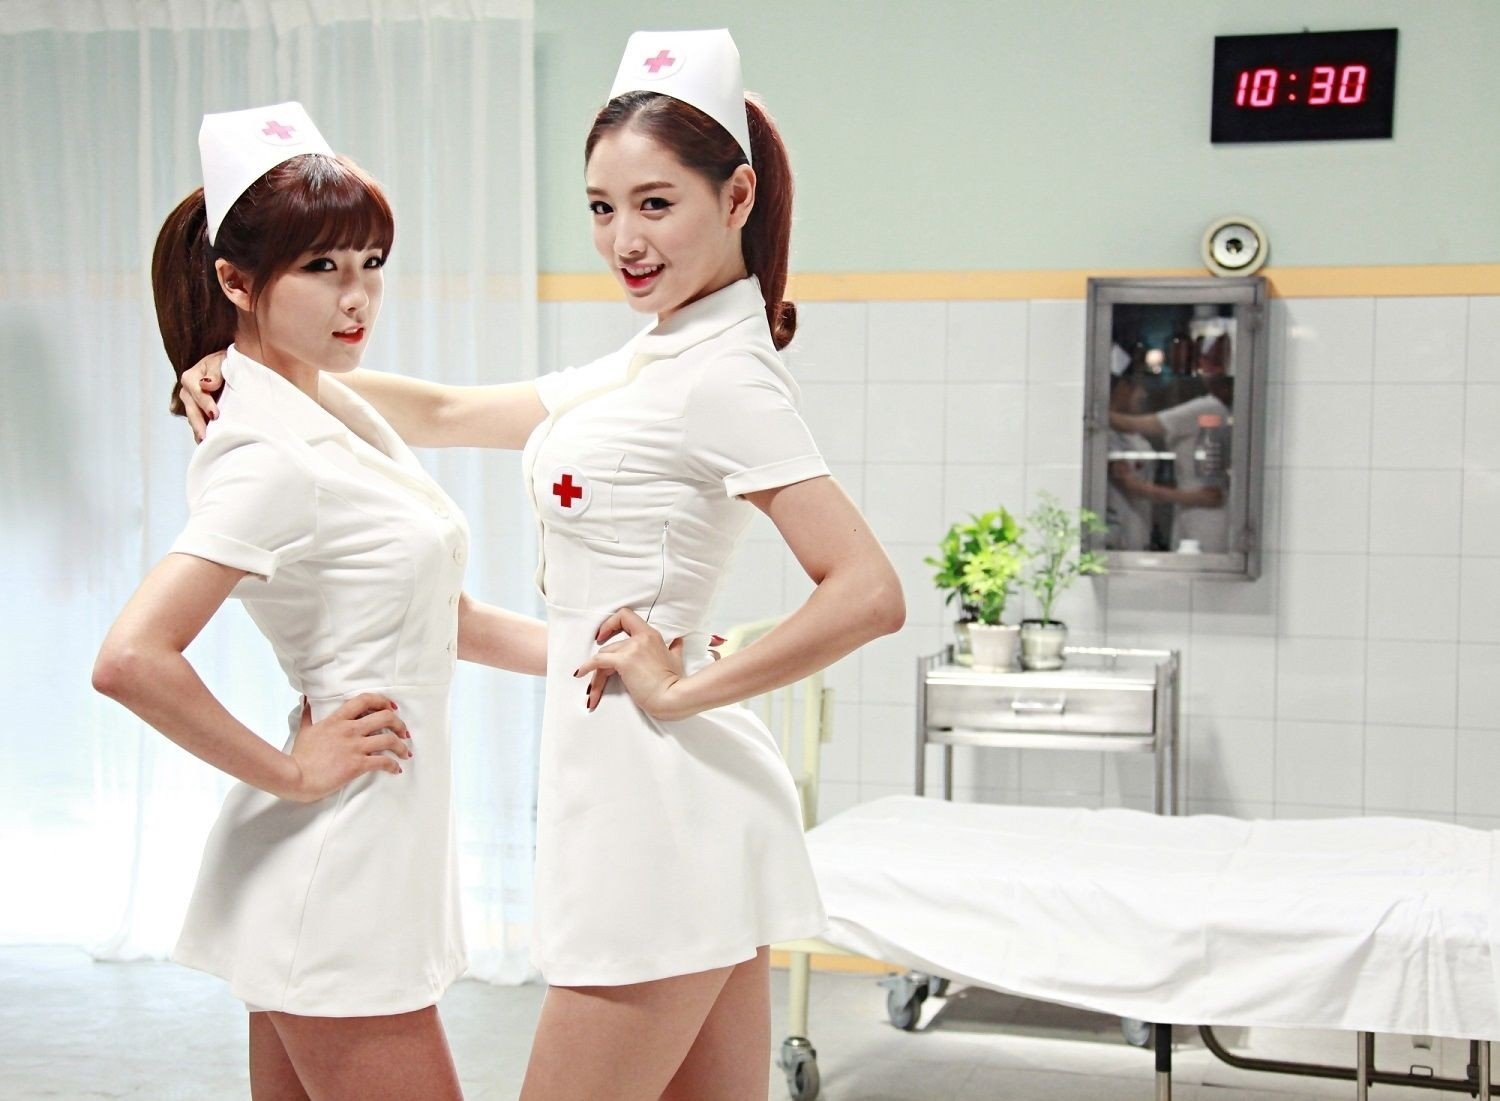 Сладкие медсестрички устроили лесби-шоу перед пациентом